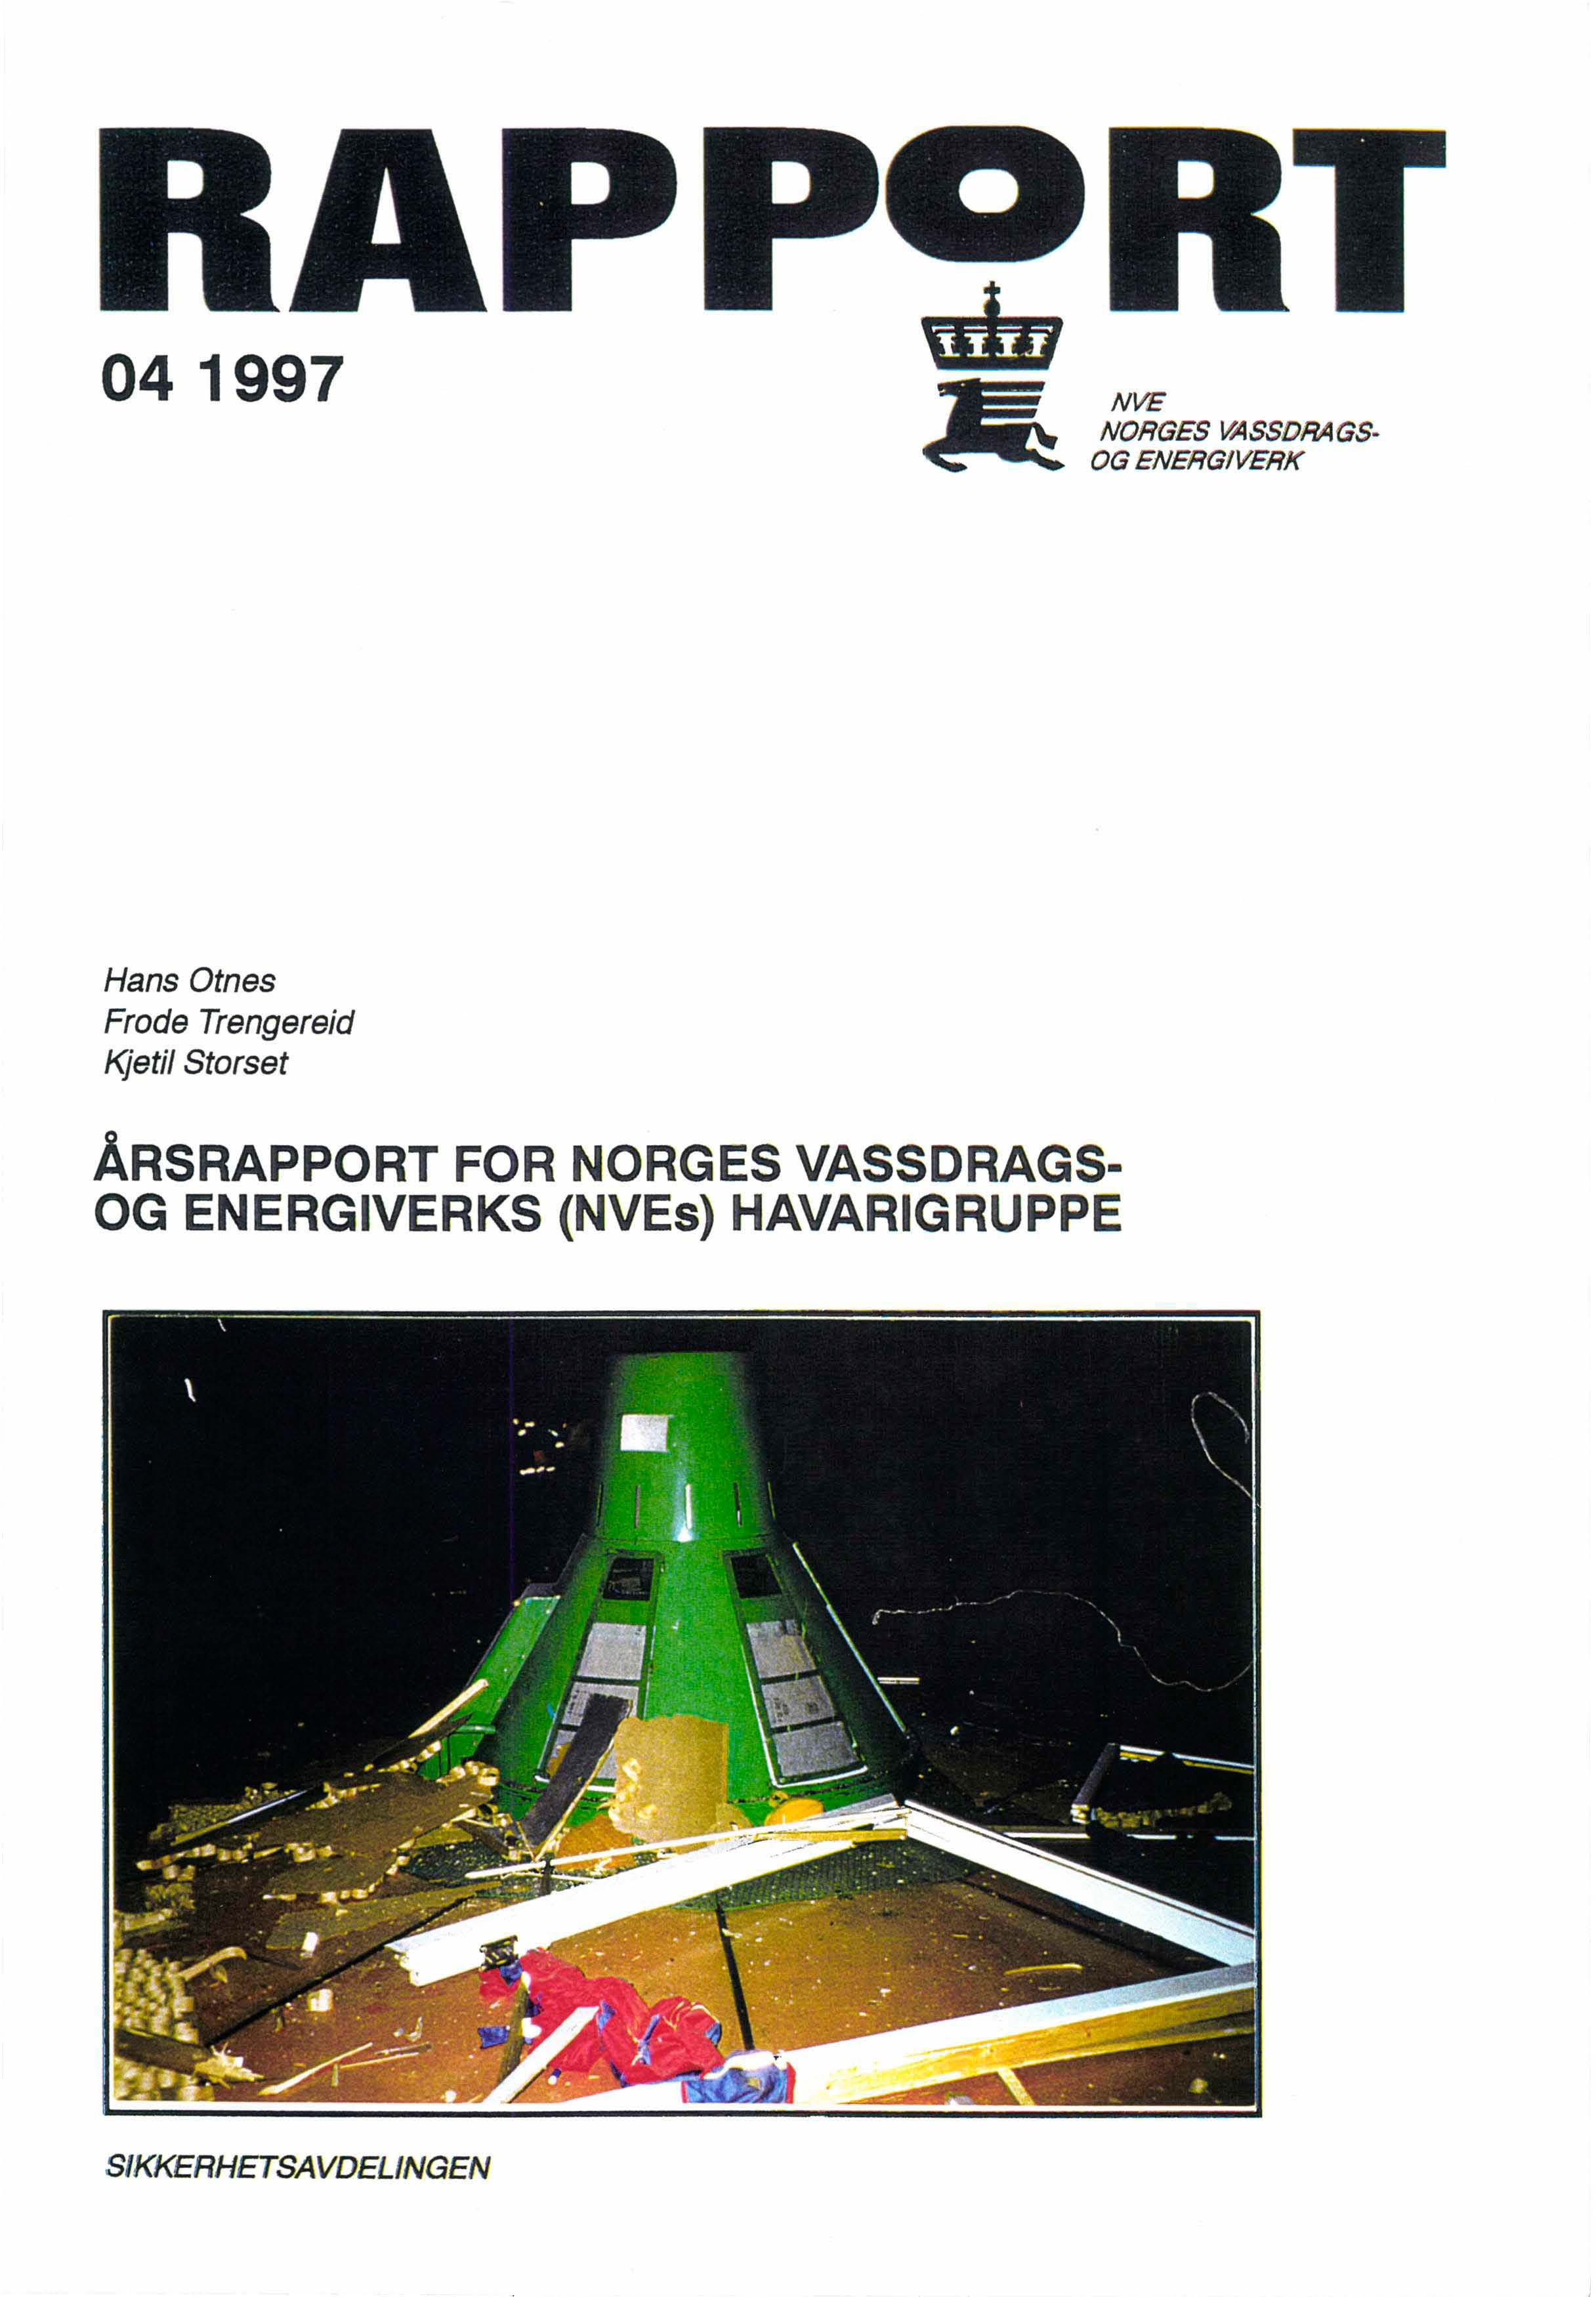 04 1997 A NVE NORGES I64SSDRAGS OG ENERGIVERK Hans Otnes Frode Trengereid Kjetil